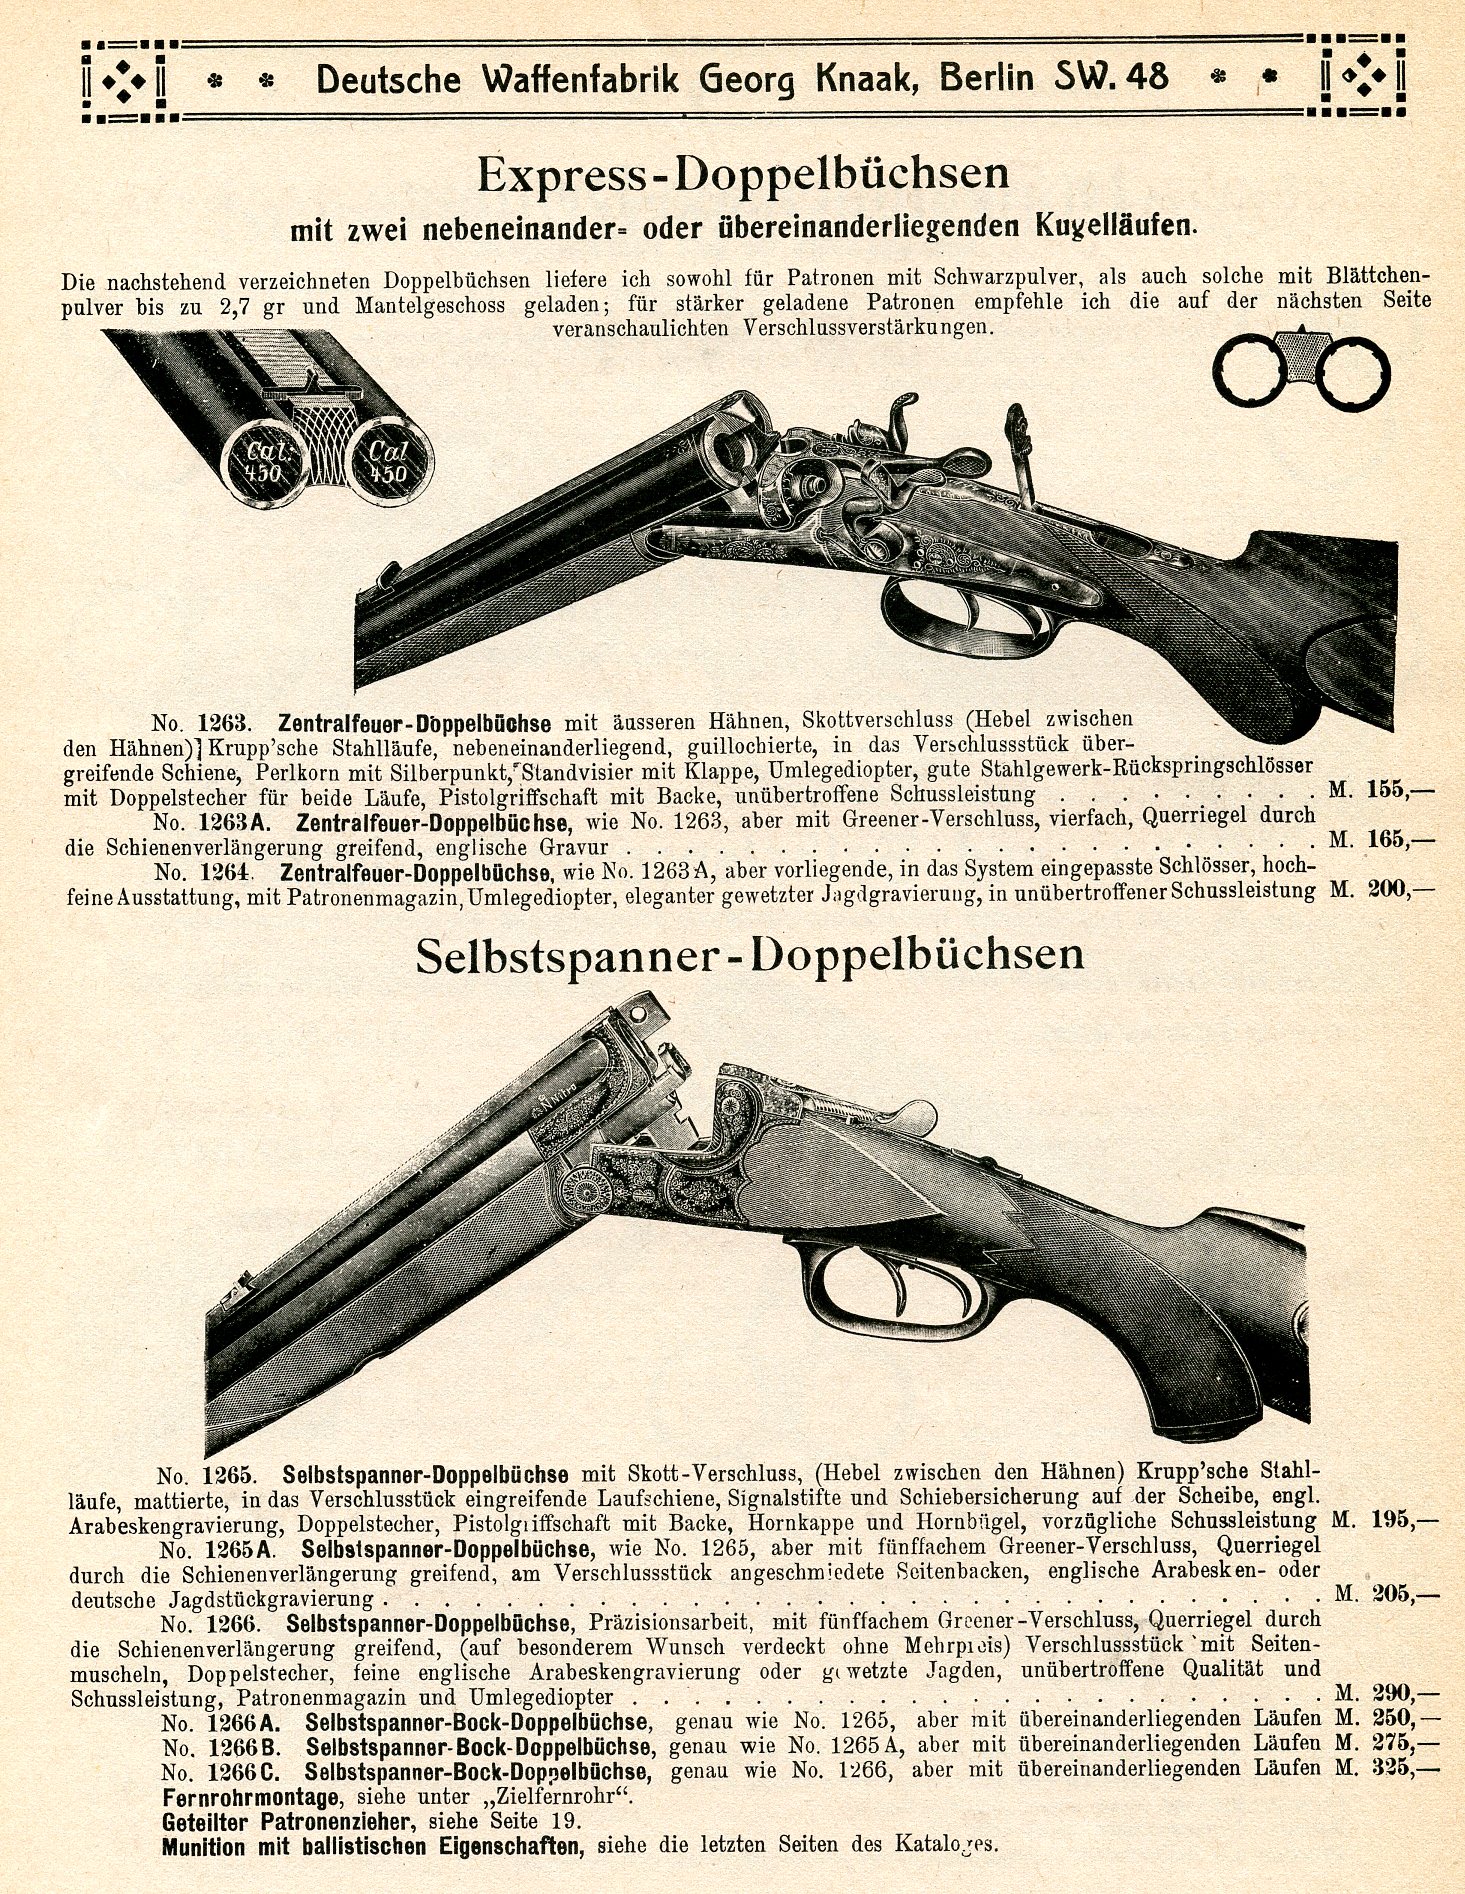 Deutsche Waffenfabrik Georg Knaak 1910 Gun Catalog 